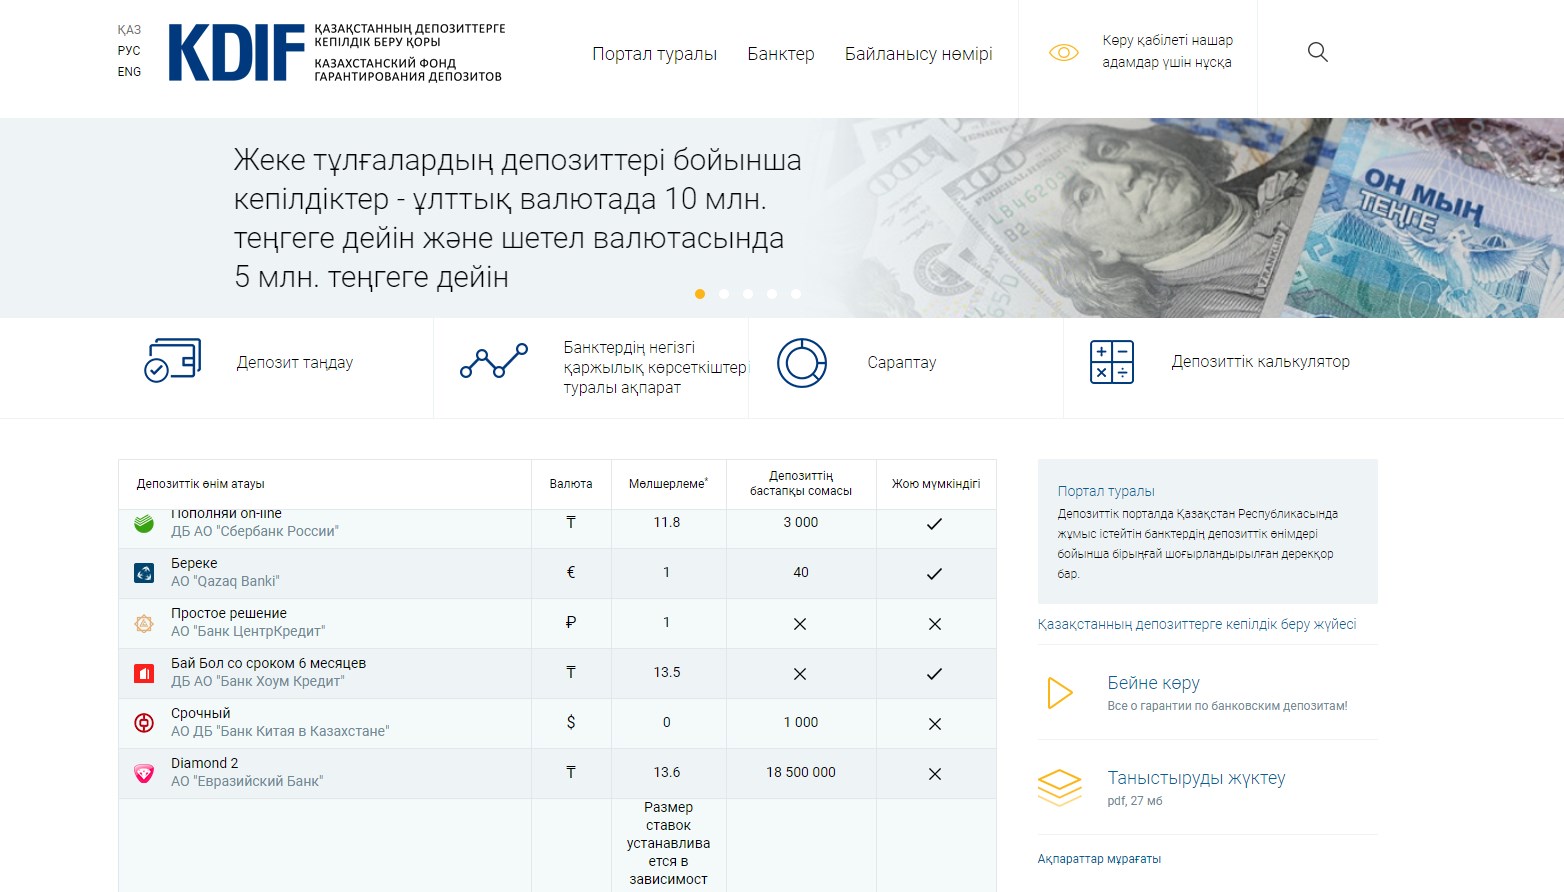 Сайт береке банка казахстана. Фонд гарантирования вкладов физических лиц.